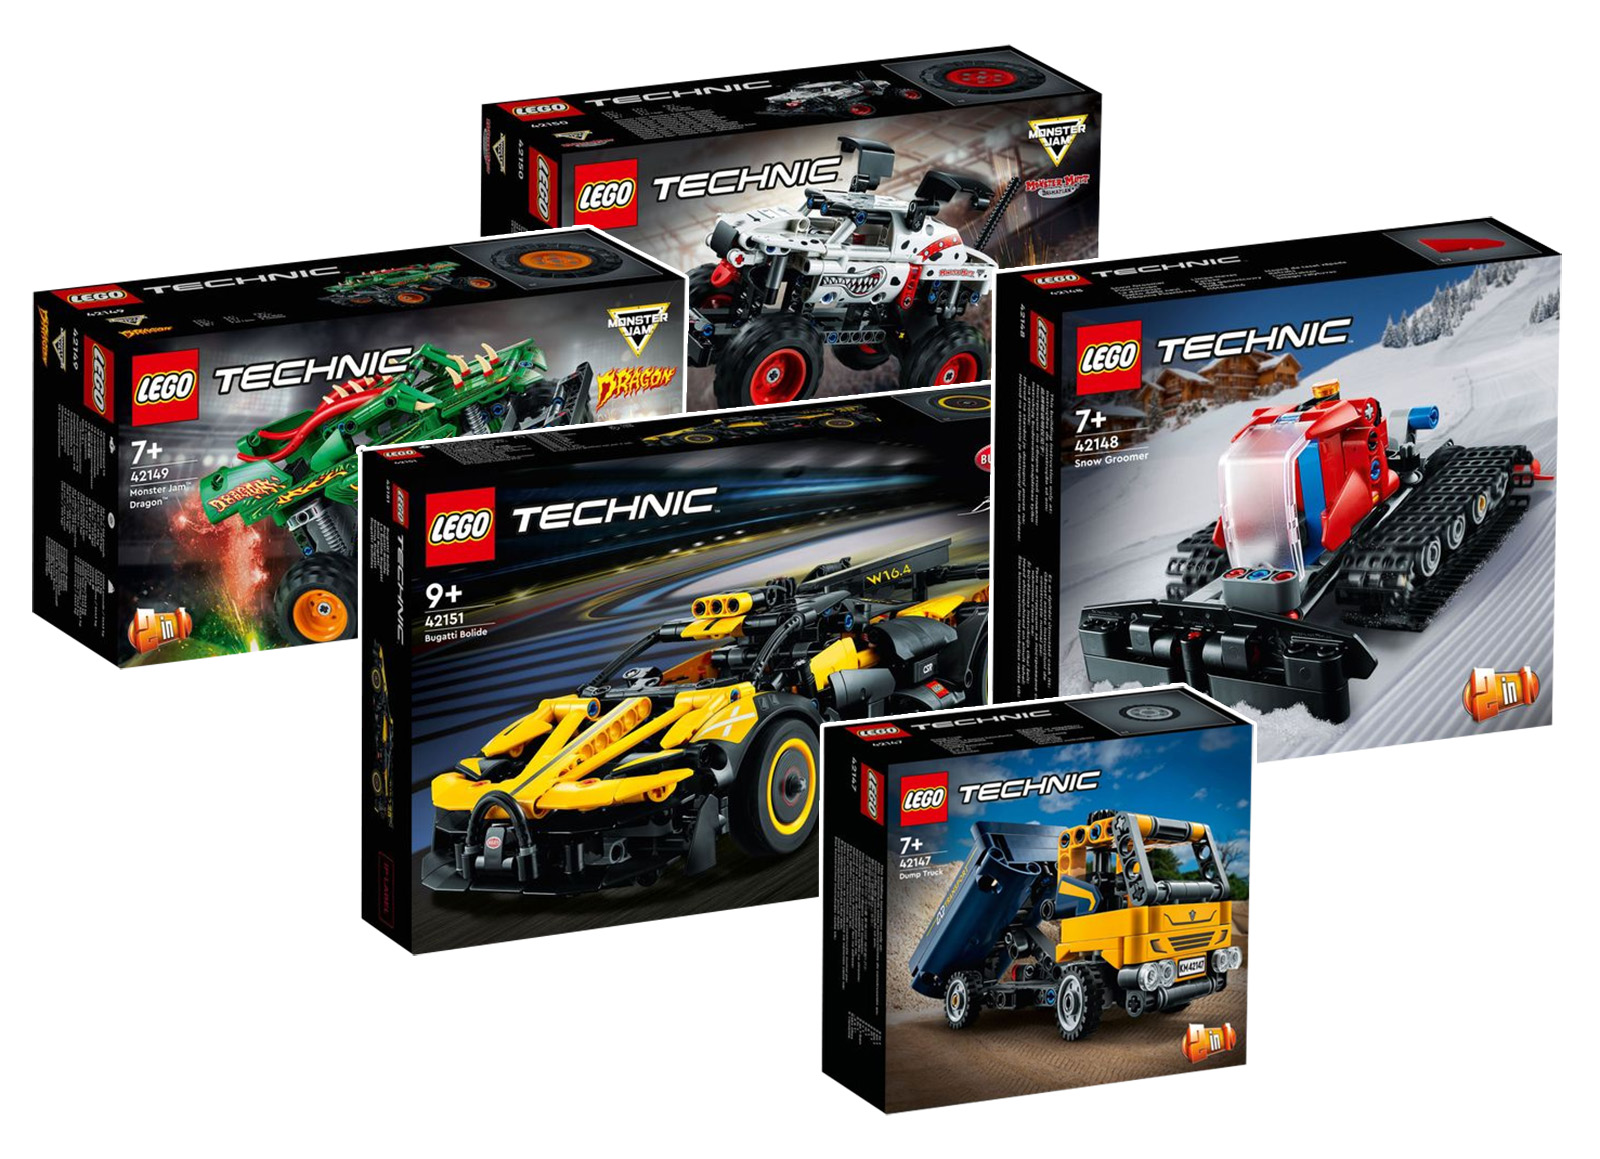 Novo LEGO Technic para o 1º semestre de 2023: já estão disponíveis os visuais oficiais